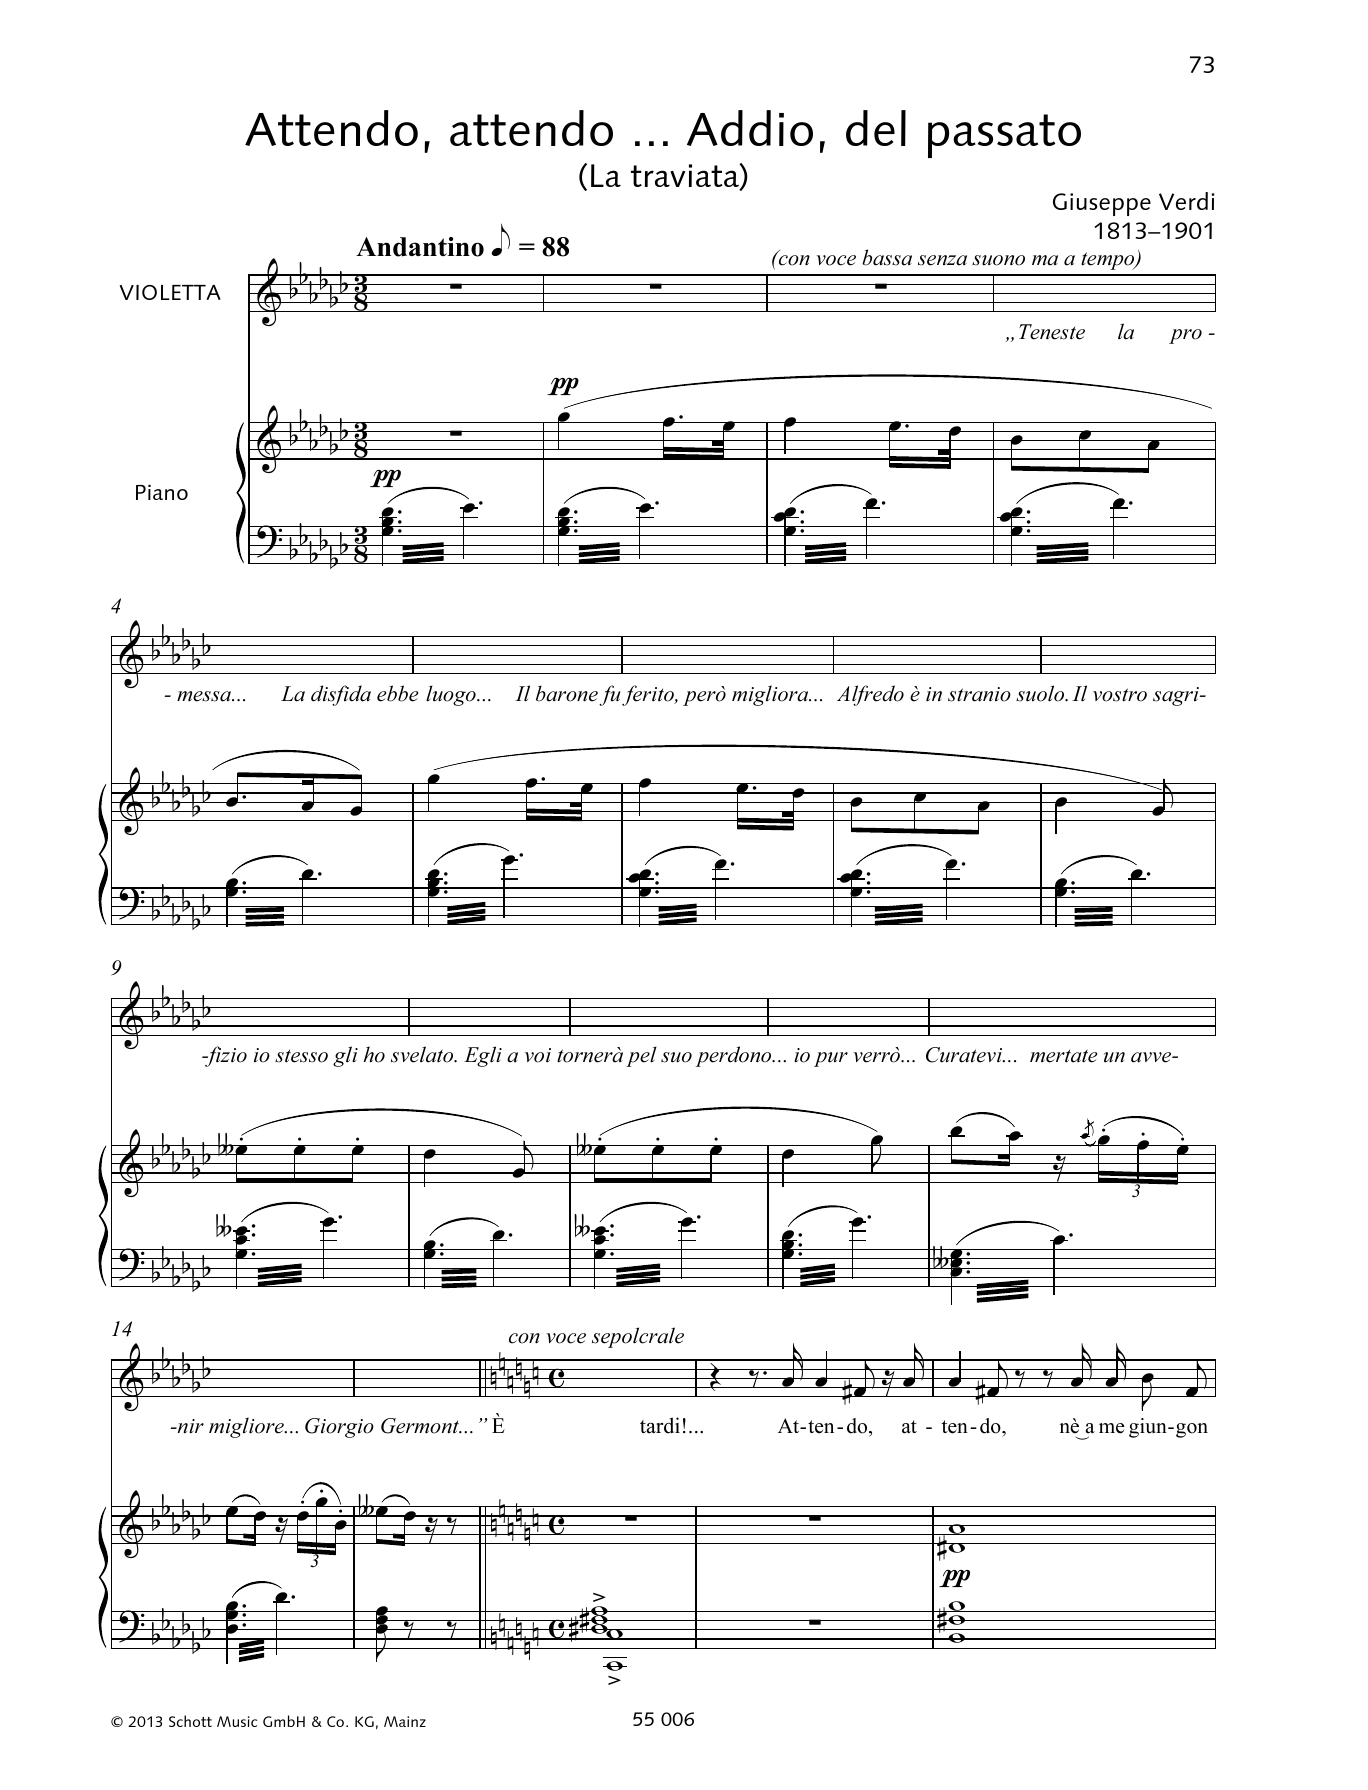 Giuseppe Verdi Attendo, attendo ... Addio, del passato Sheet Music Notes & Chords for Piano & Vocal - Download or Print PDF